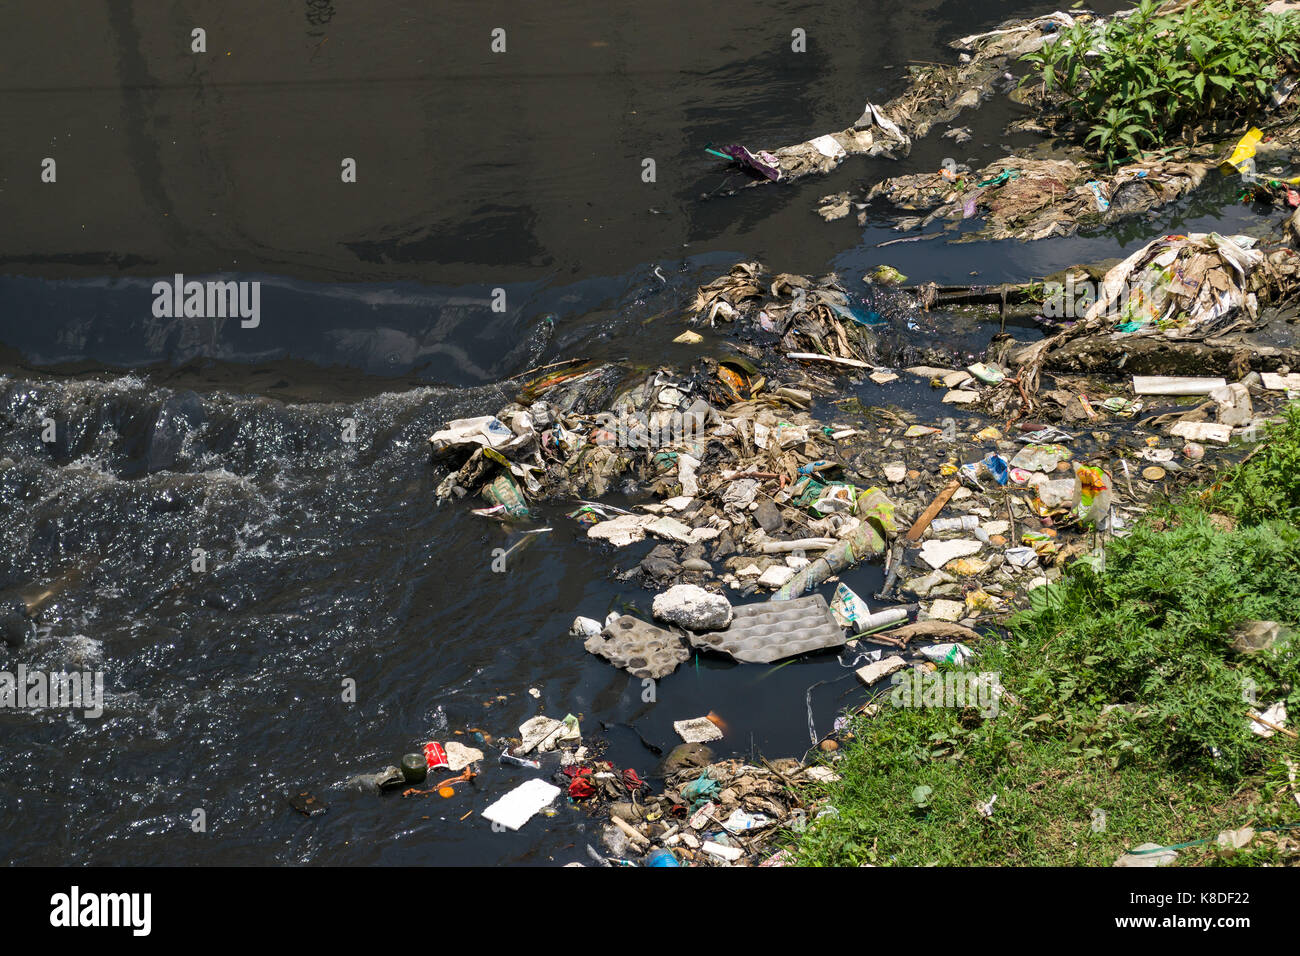 Die ngong Fluss, der mit Müll, Plastik Abfall und Müll verschmutzt ist, Nairobi, Kenia Stockfoto